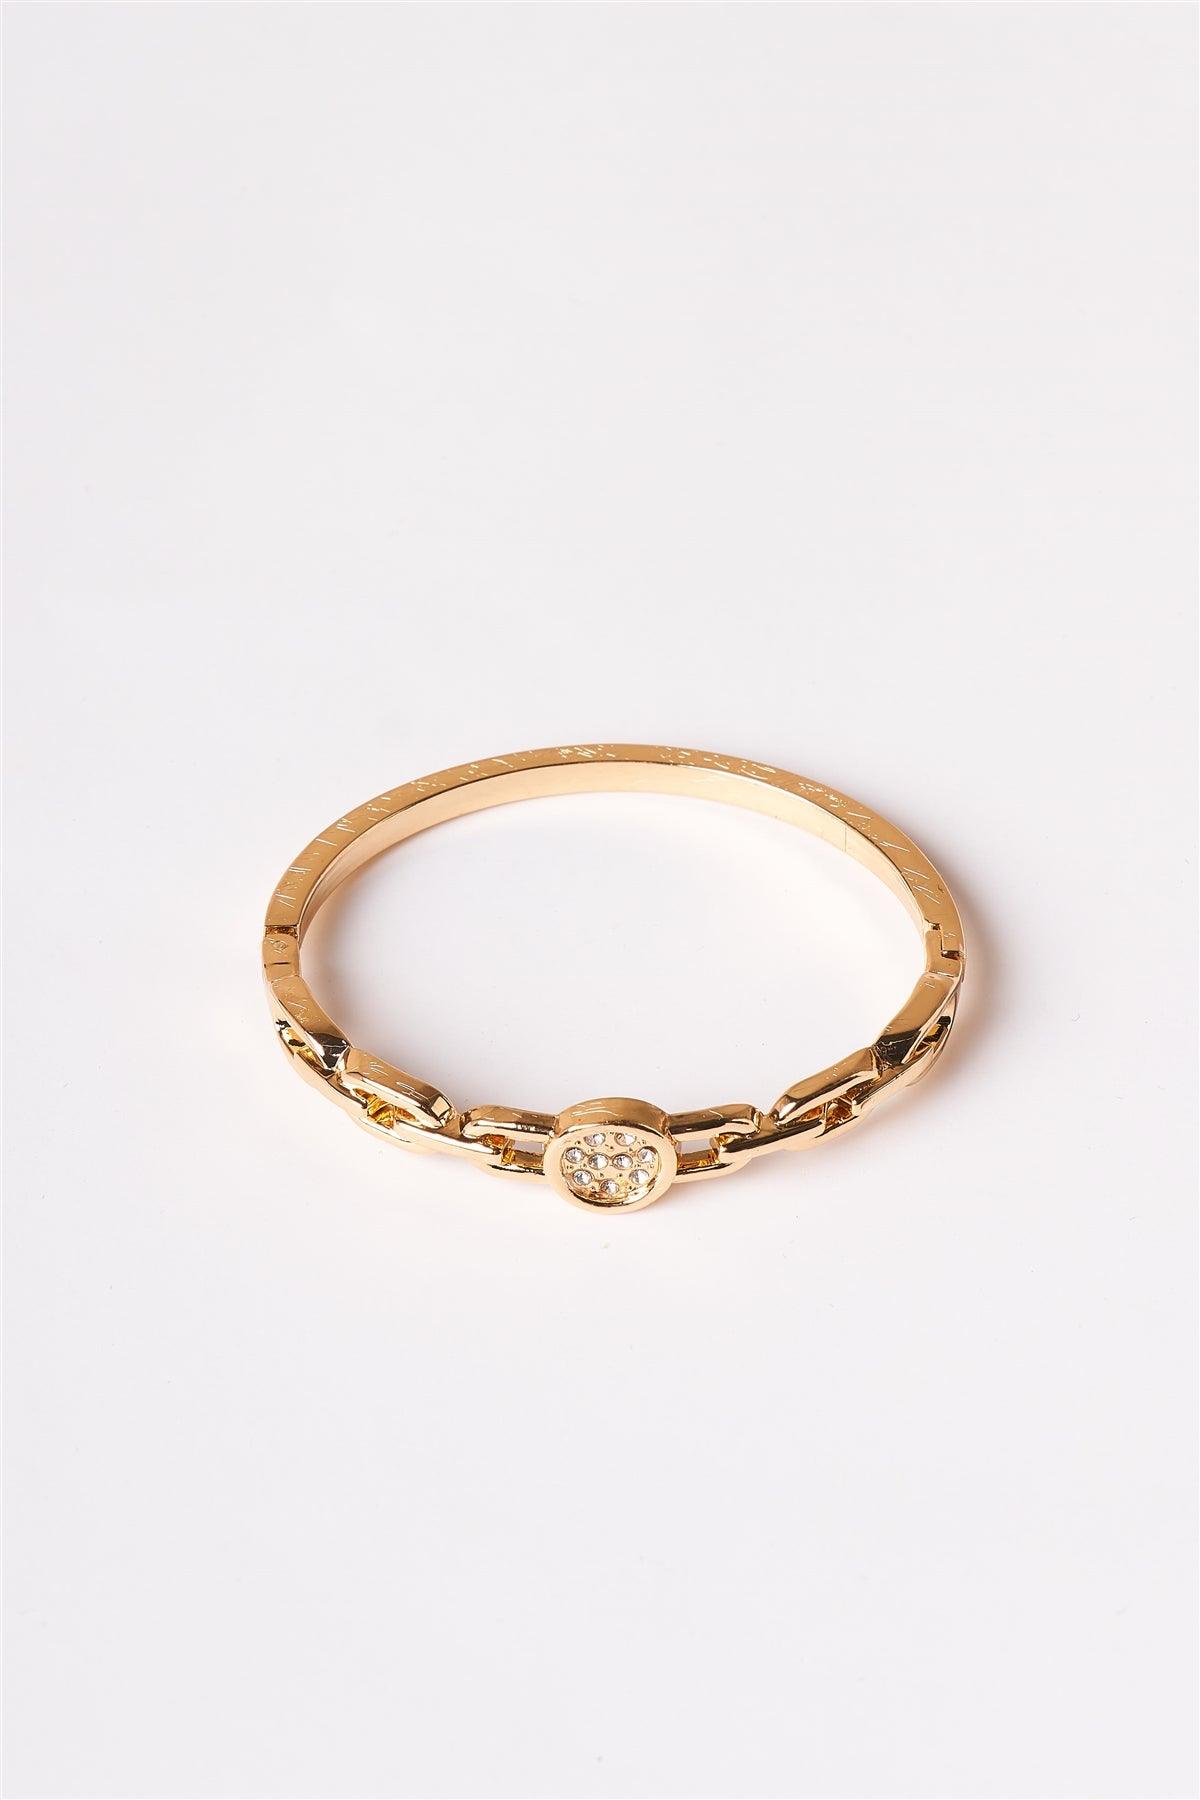 Gold Chain Bangle Clasp Bracelet /6 Pieces